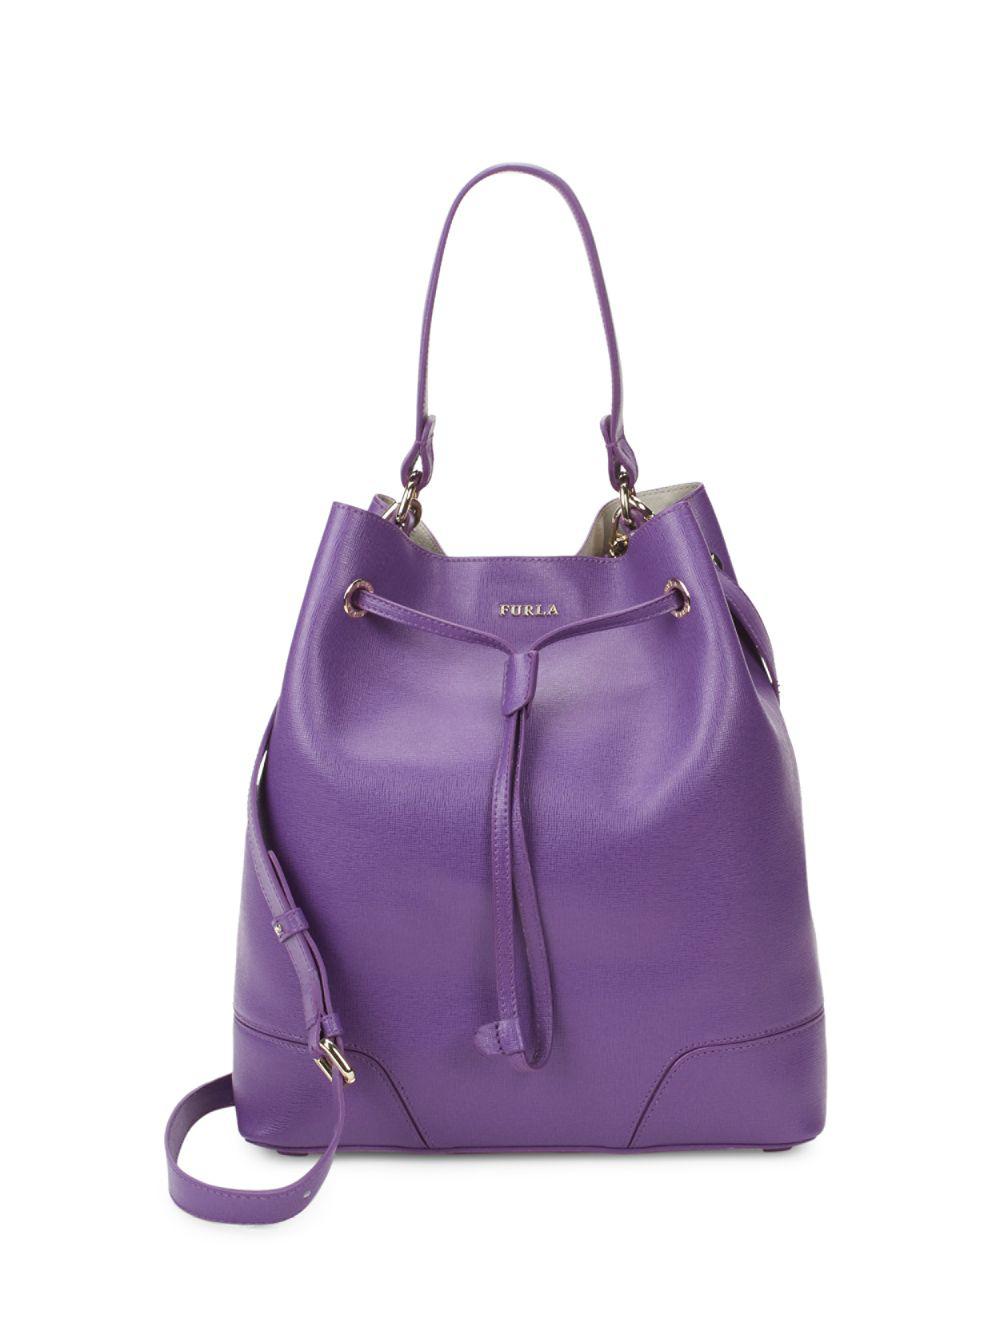 Women Bags Furla Women Leather Bags Furla Women Leather Handbags Furla Women Leather Handbag FURLA purple Leather Handbags Furla Women 